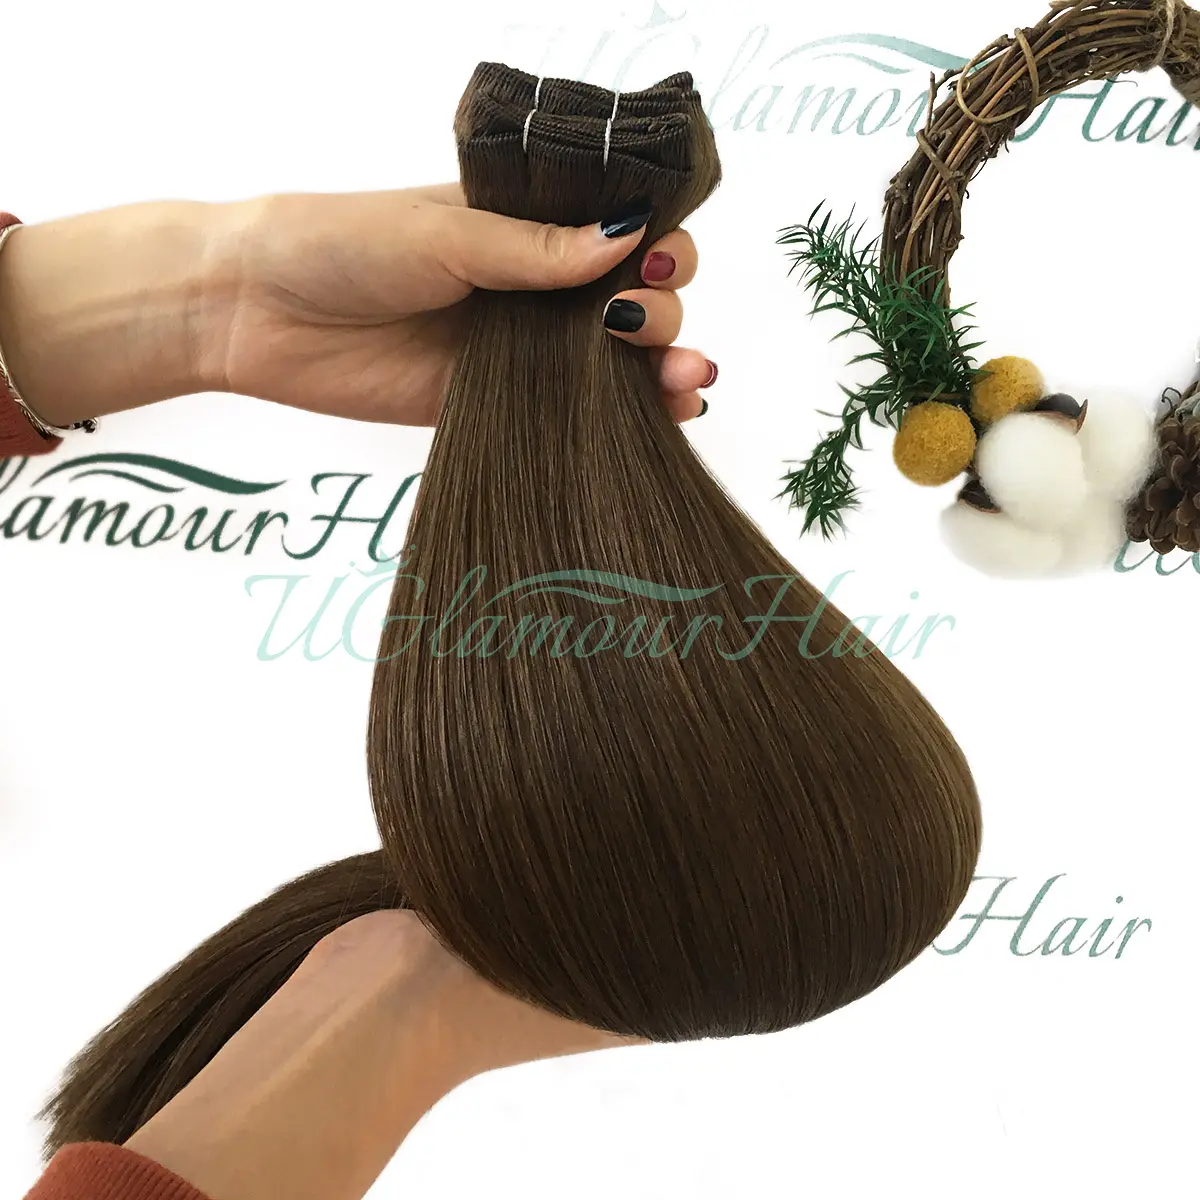 U Glamour Hair ekstensi rambut juki jahit berkualitas Salon baru dengan sambungan rambut sambungan ganda